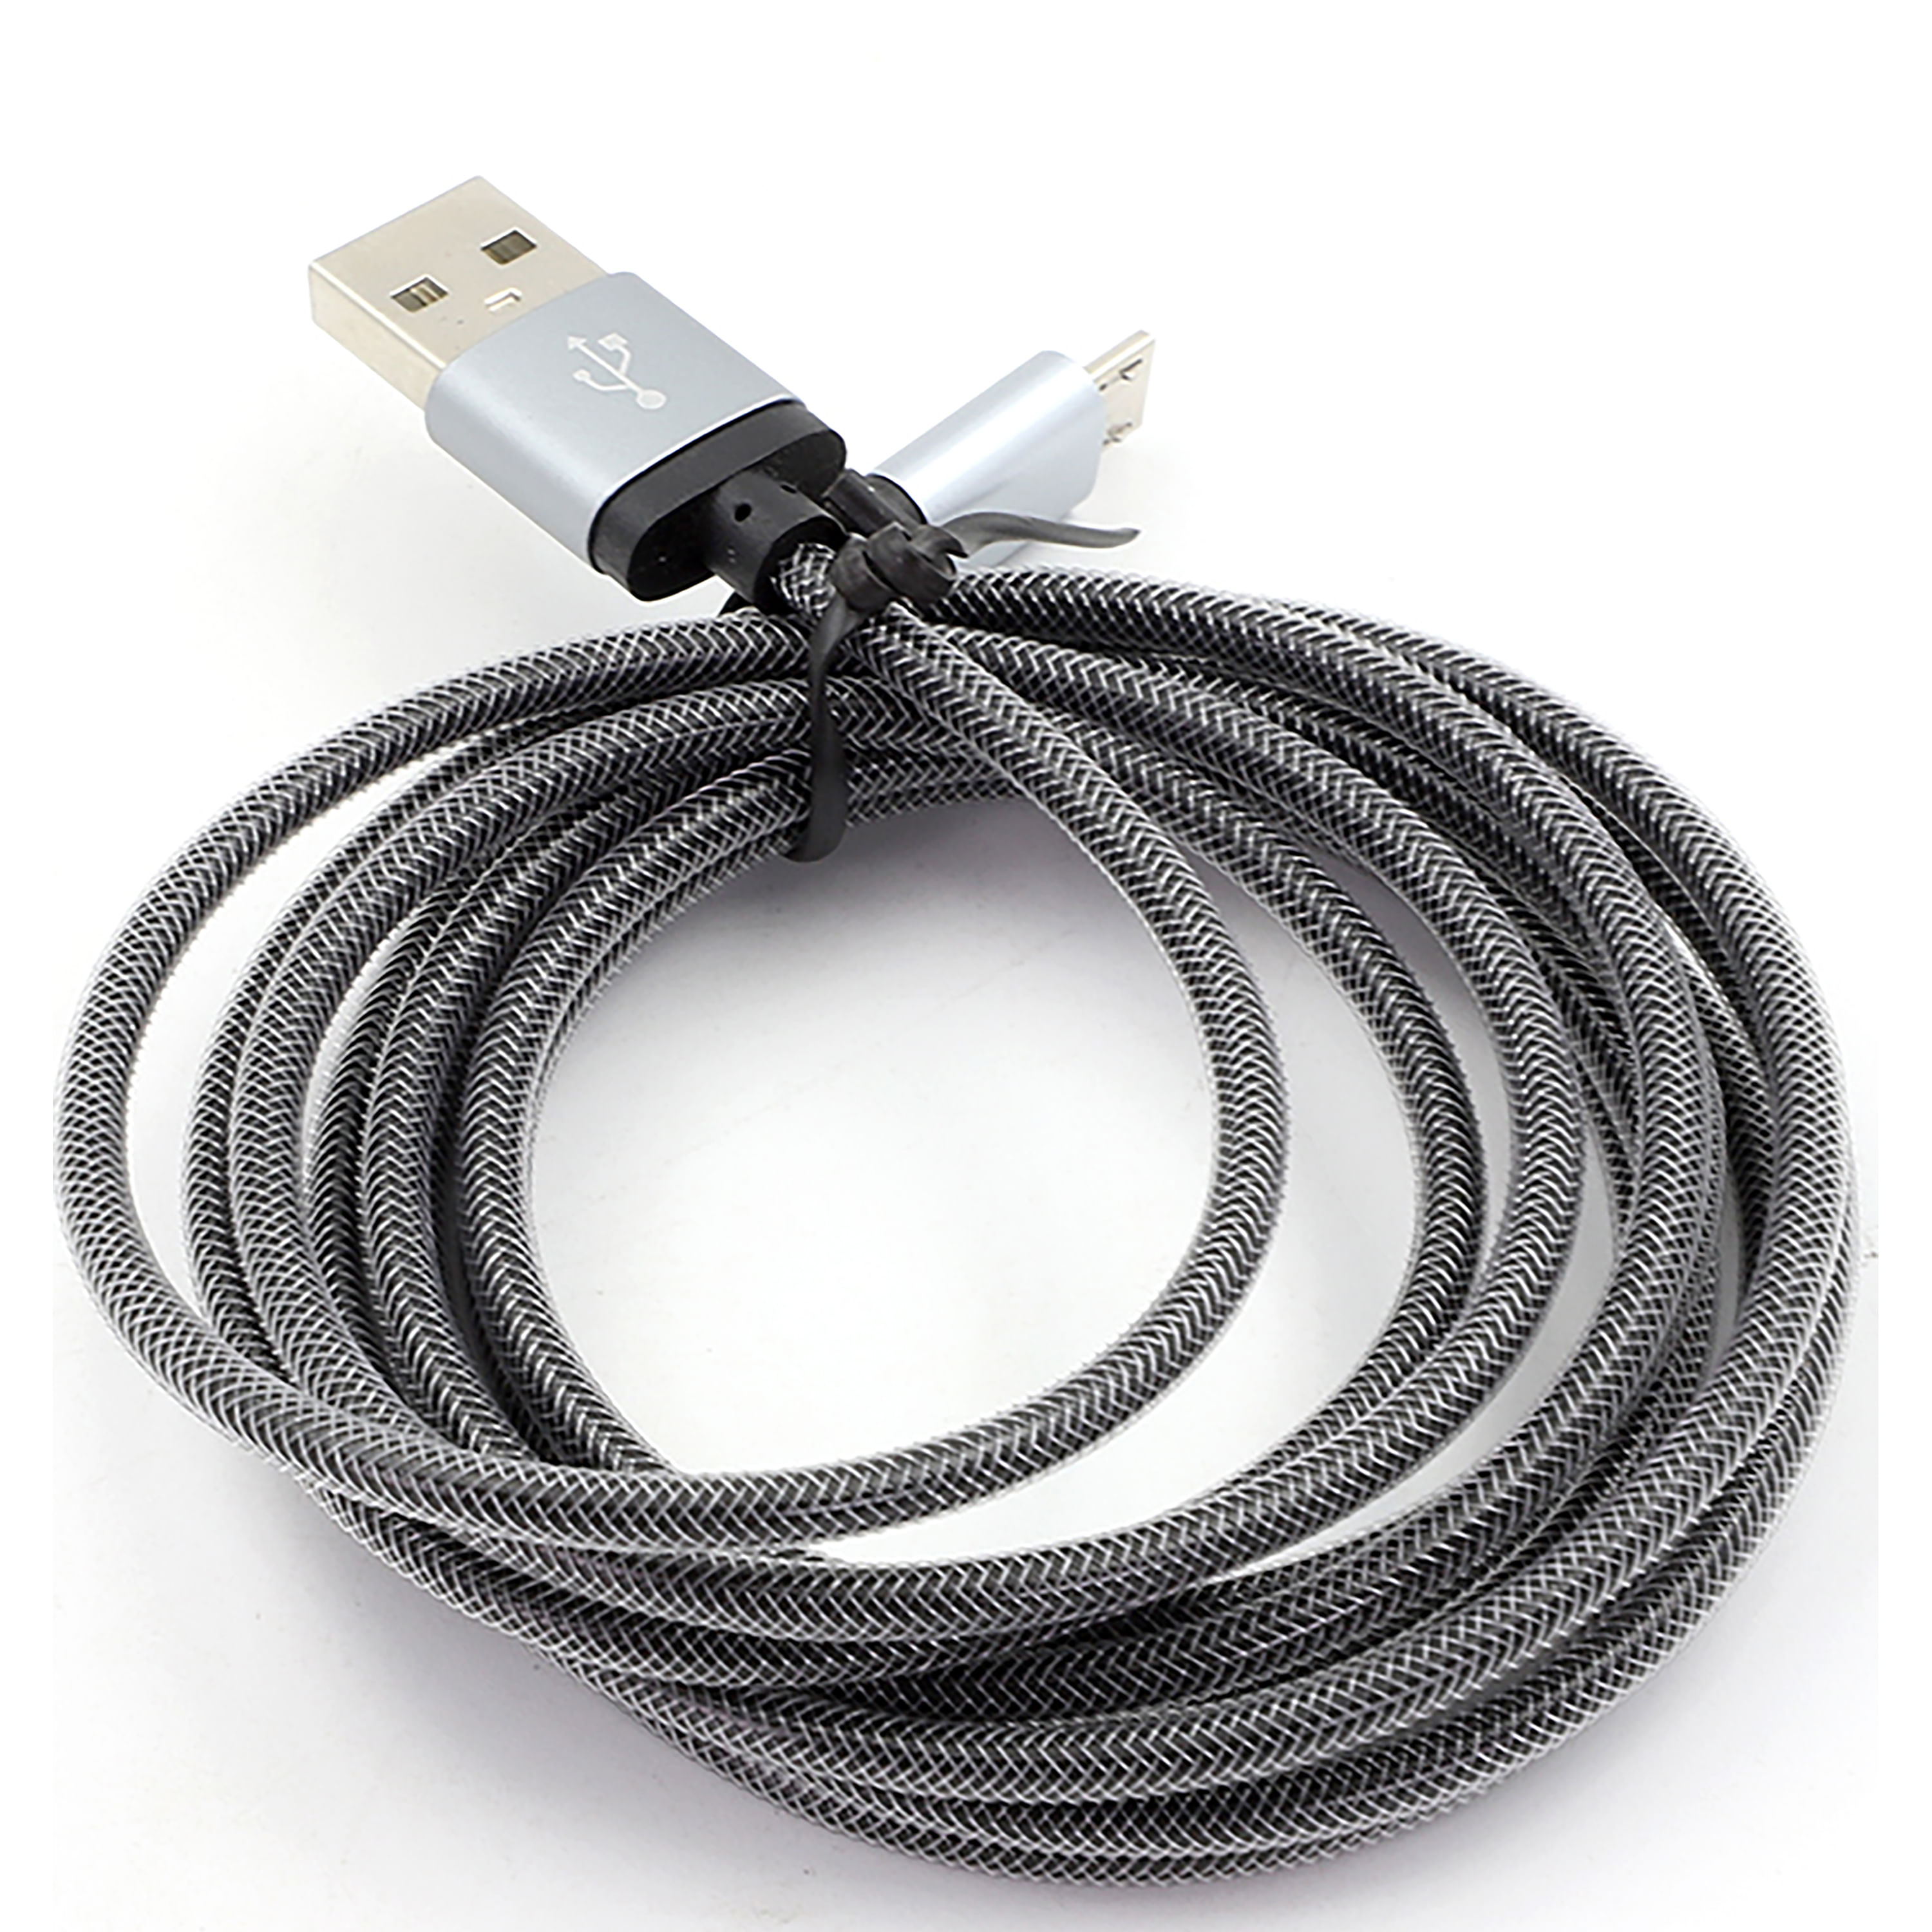 Las mejores ofertas en Teléfono celular Micro-USB Cables y Adaptadores